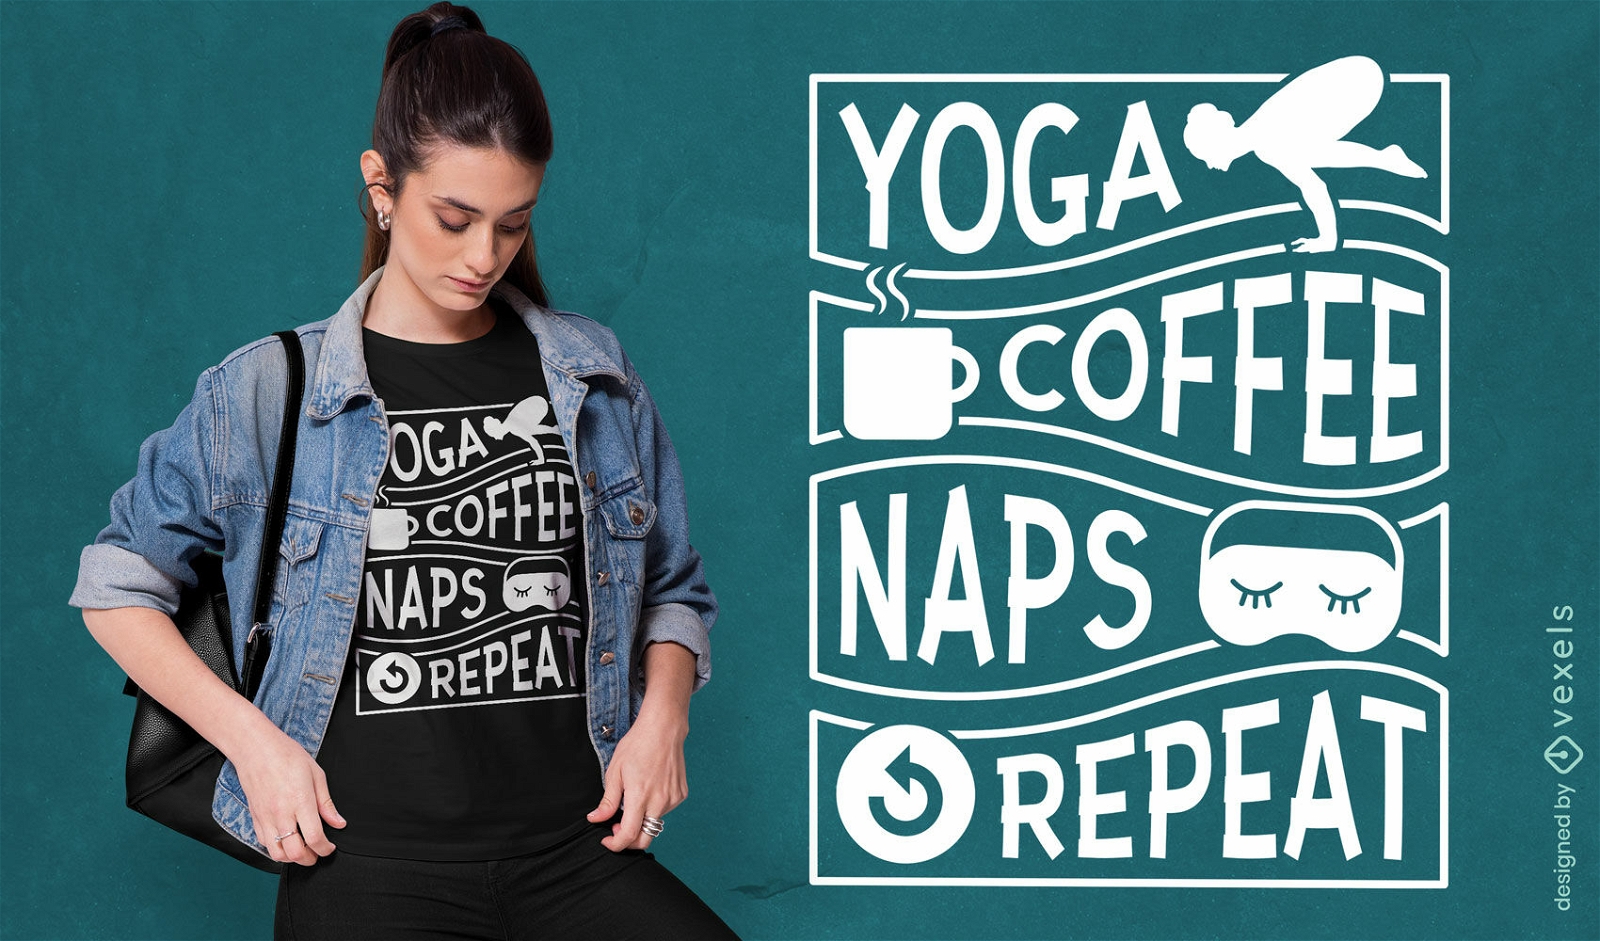 Caf? de ioga e cochilos citam design de camiseta